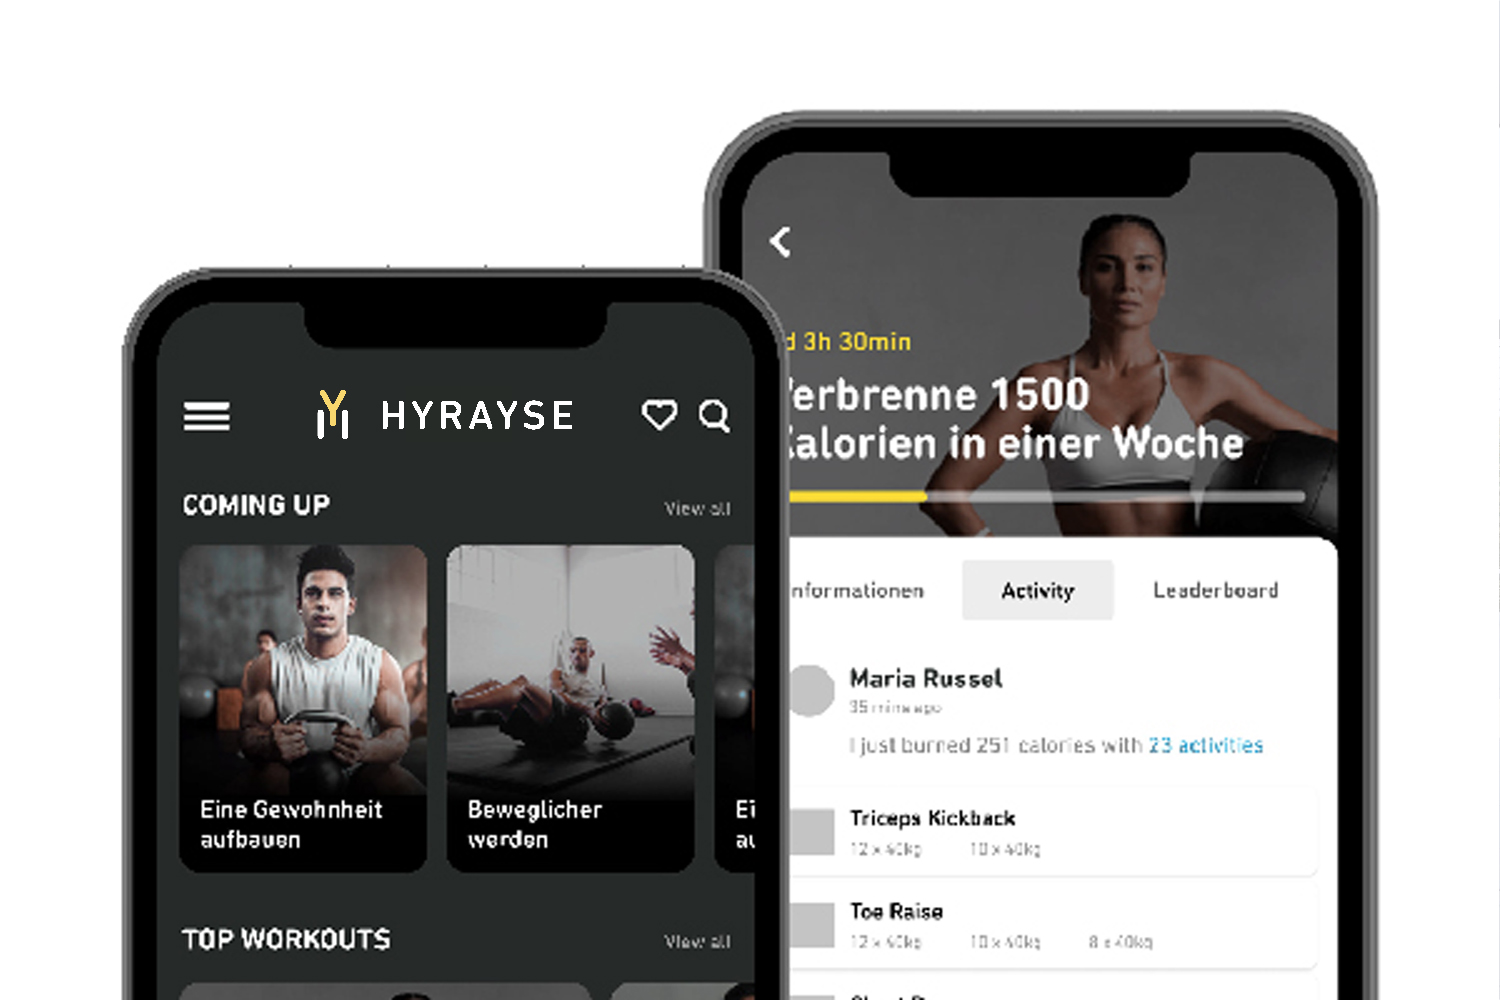 Hyrayse-Produkt, Personal Trainer, Digitaler PT, Abbildung der Hyrayse-App